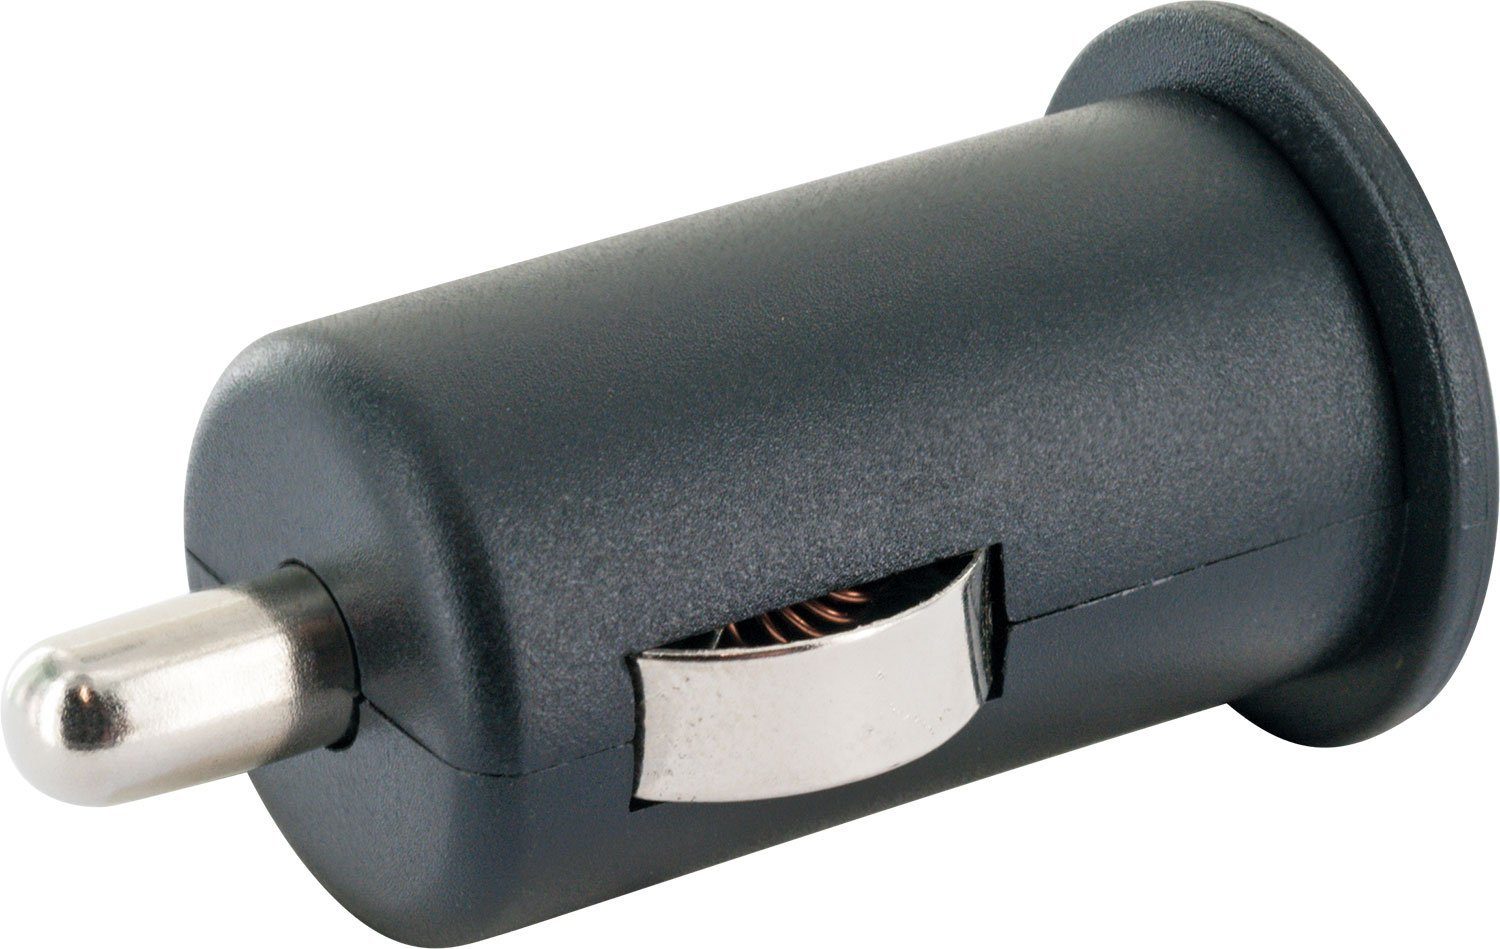 Schwaiger LAD12 531 integriertes Sicherheitssystem A Buchse, USB zu KFZ-Adapter Multi-Schutz Zigarettenanzünder 2.0